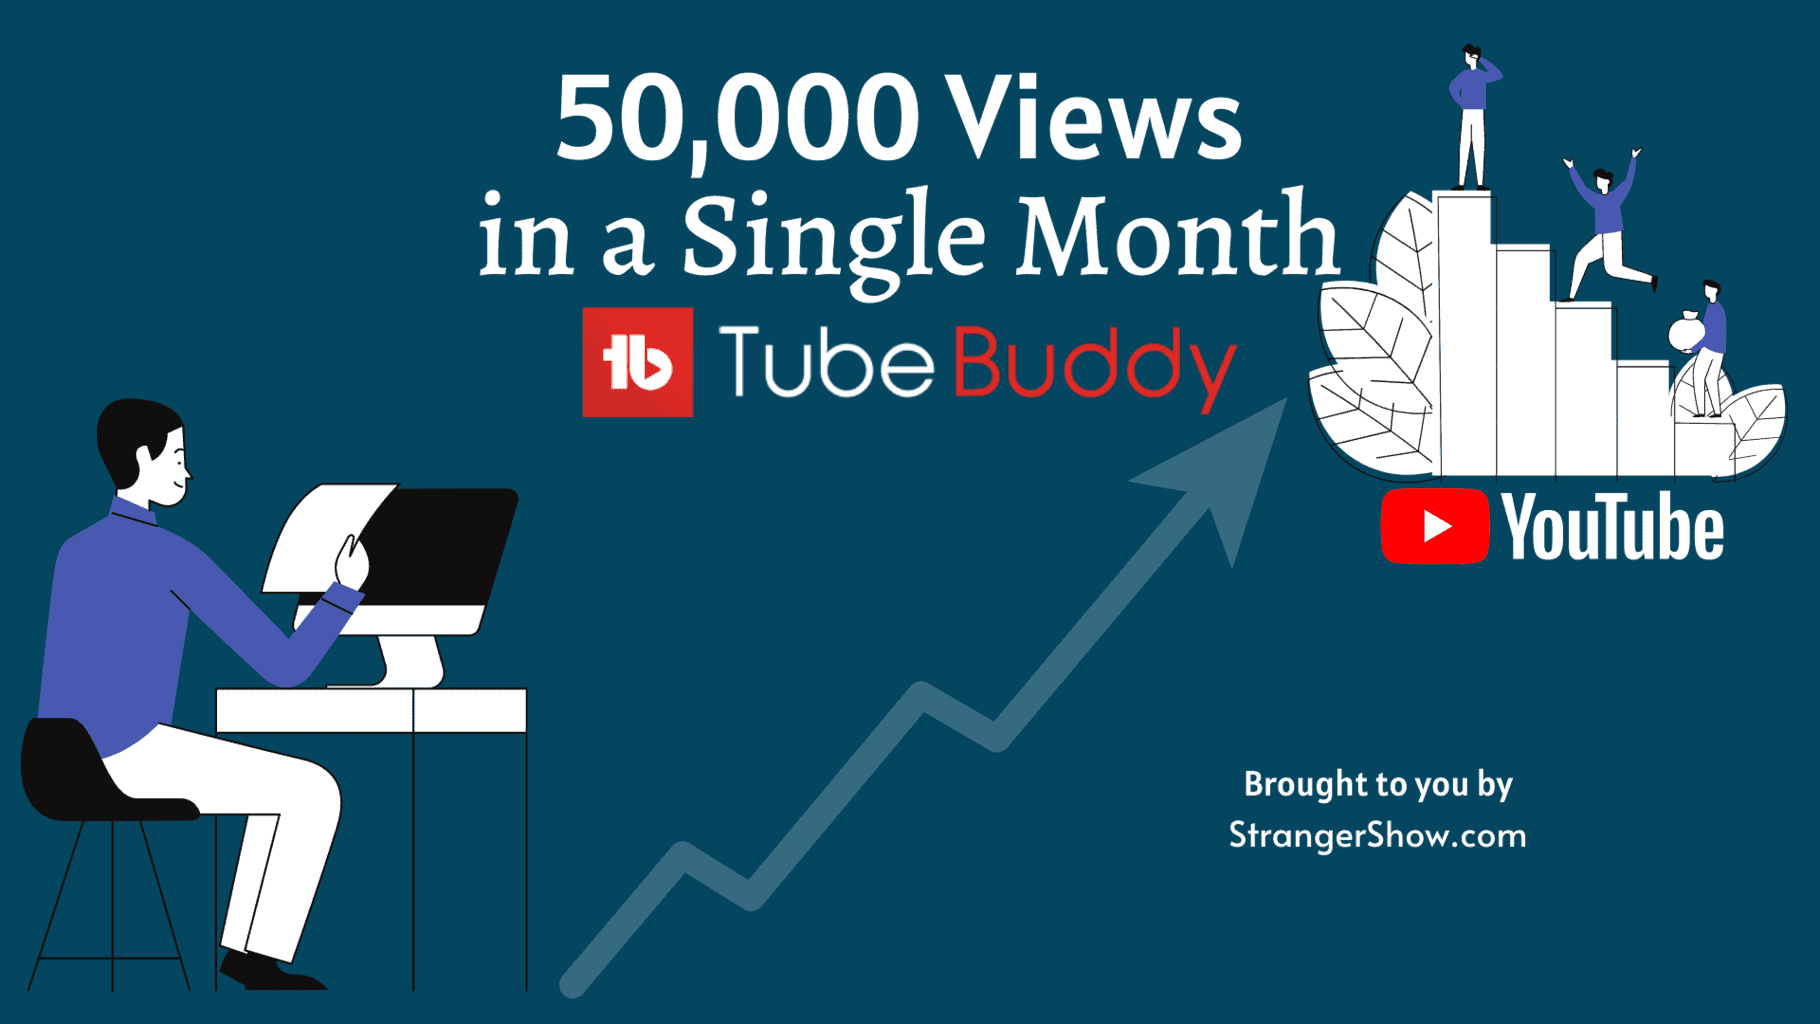 TubeBuddy Case Study - increase YouTube traffic